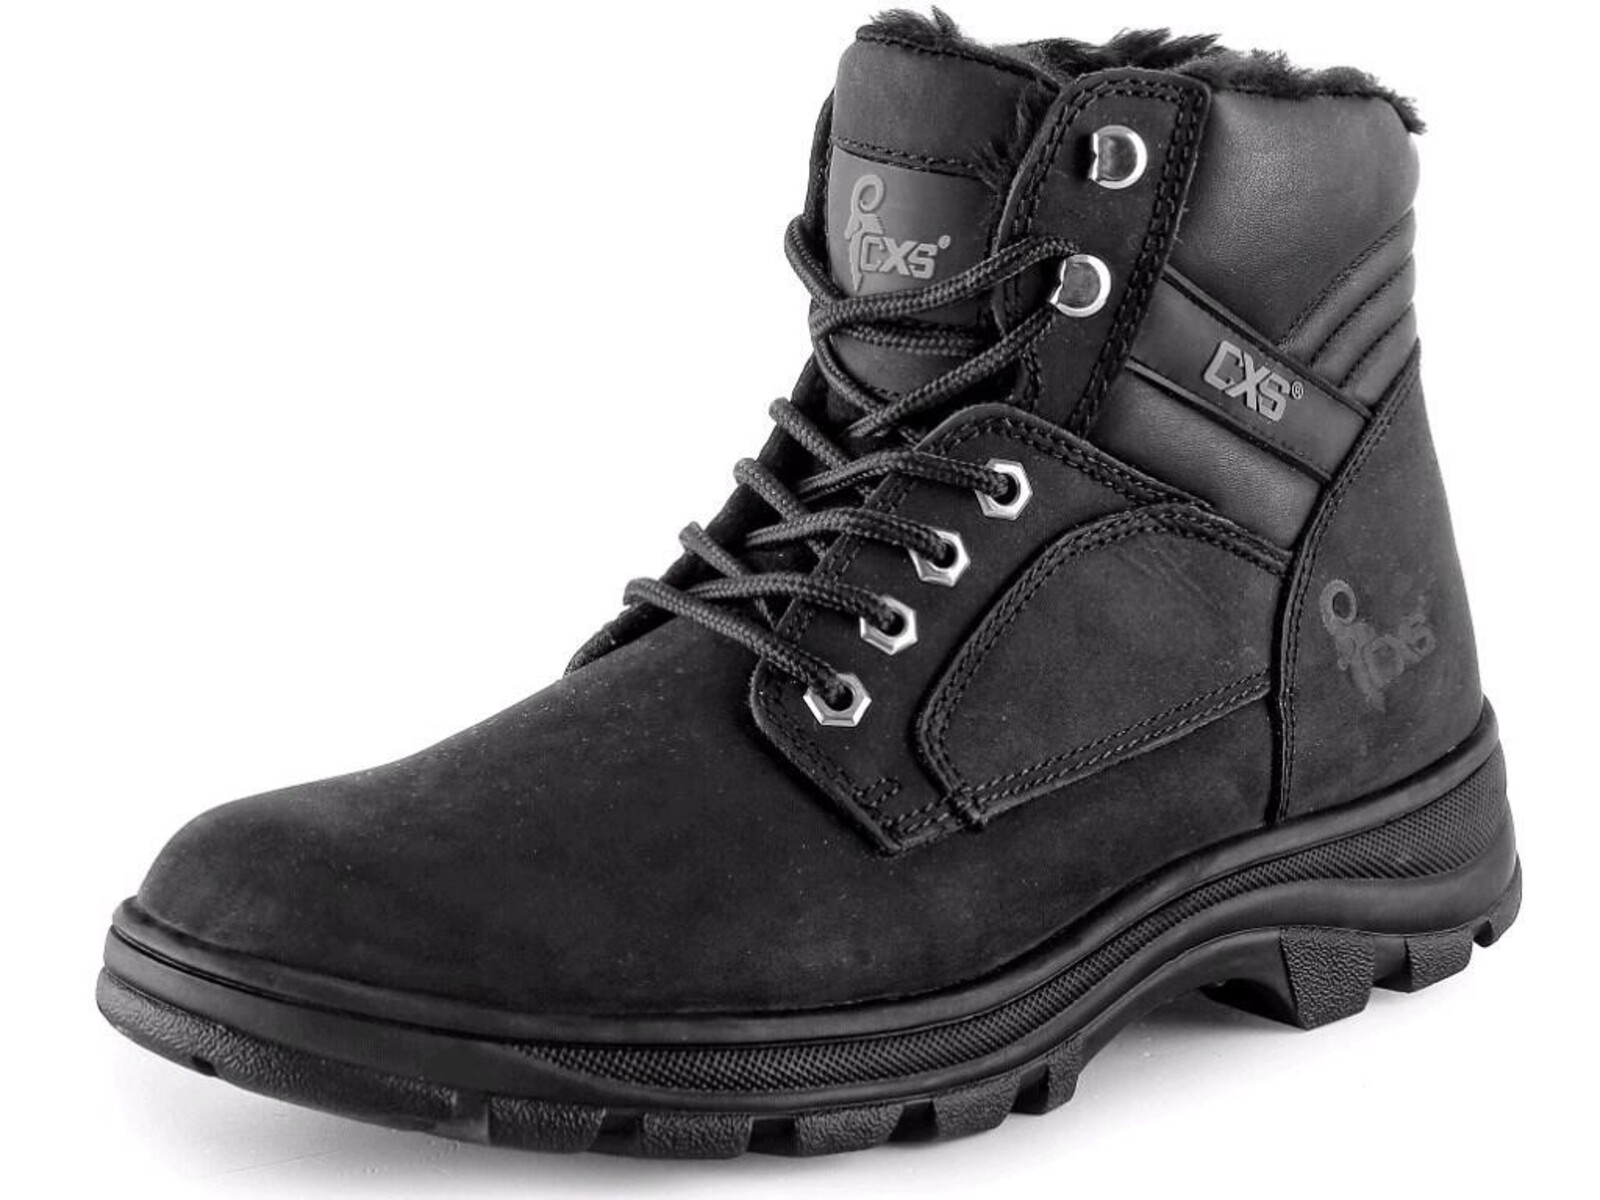 Zimná členková obuv CXS Road Industry FO E CI SRA - veľkosť: 45, farba: čierna